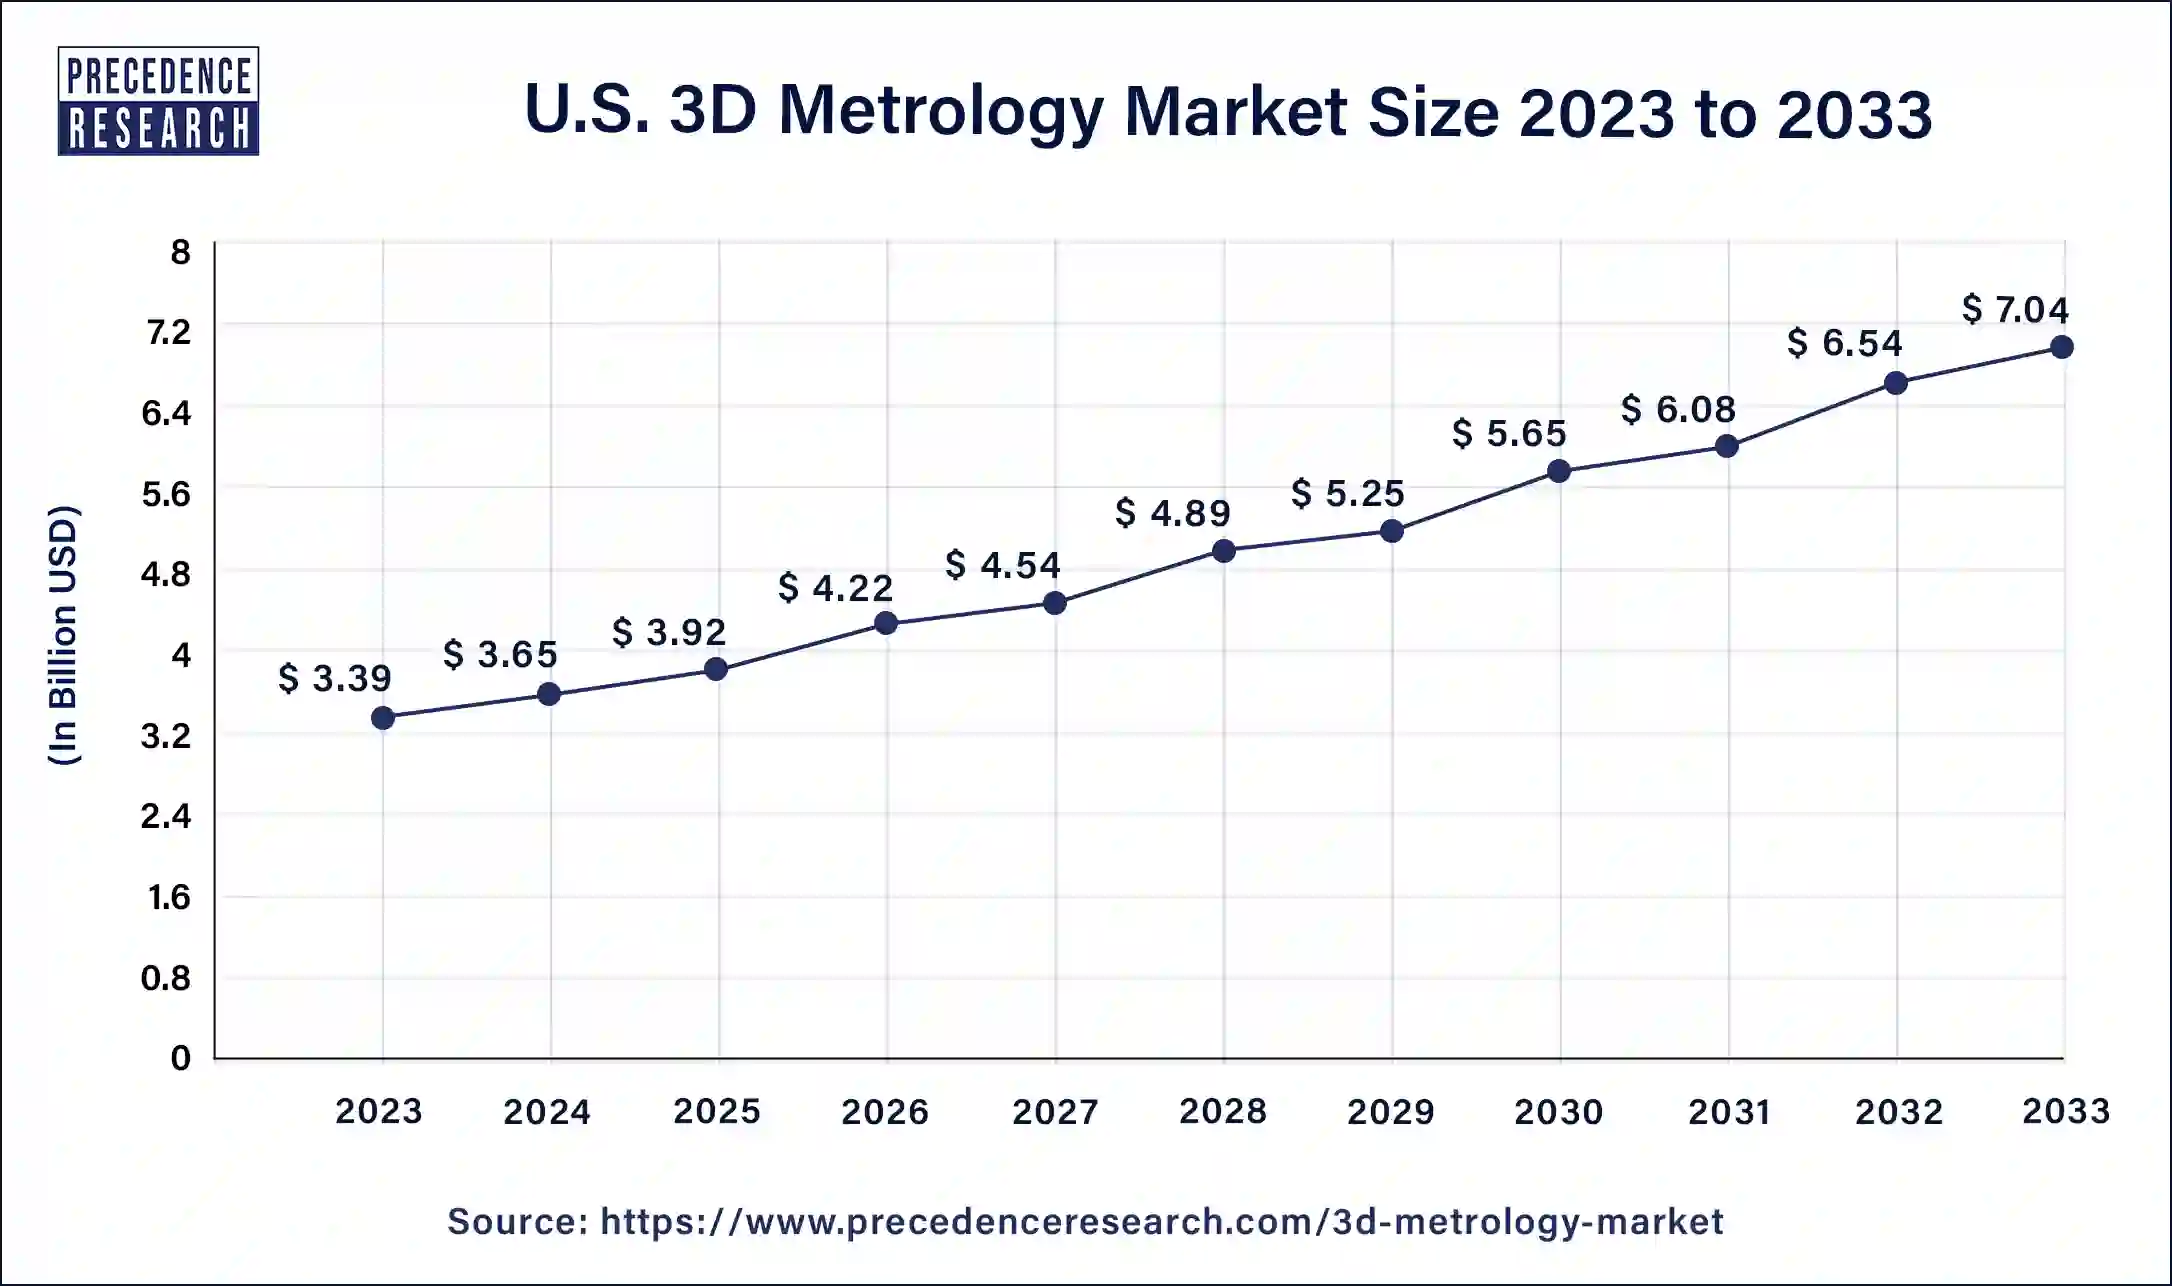 U.S. 3D Metrology Market Size 2024 to 2033